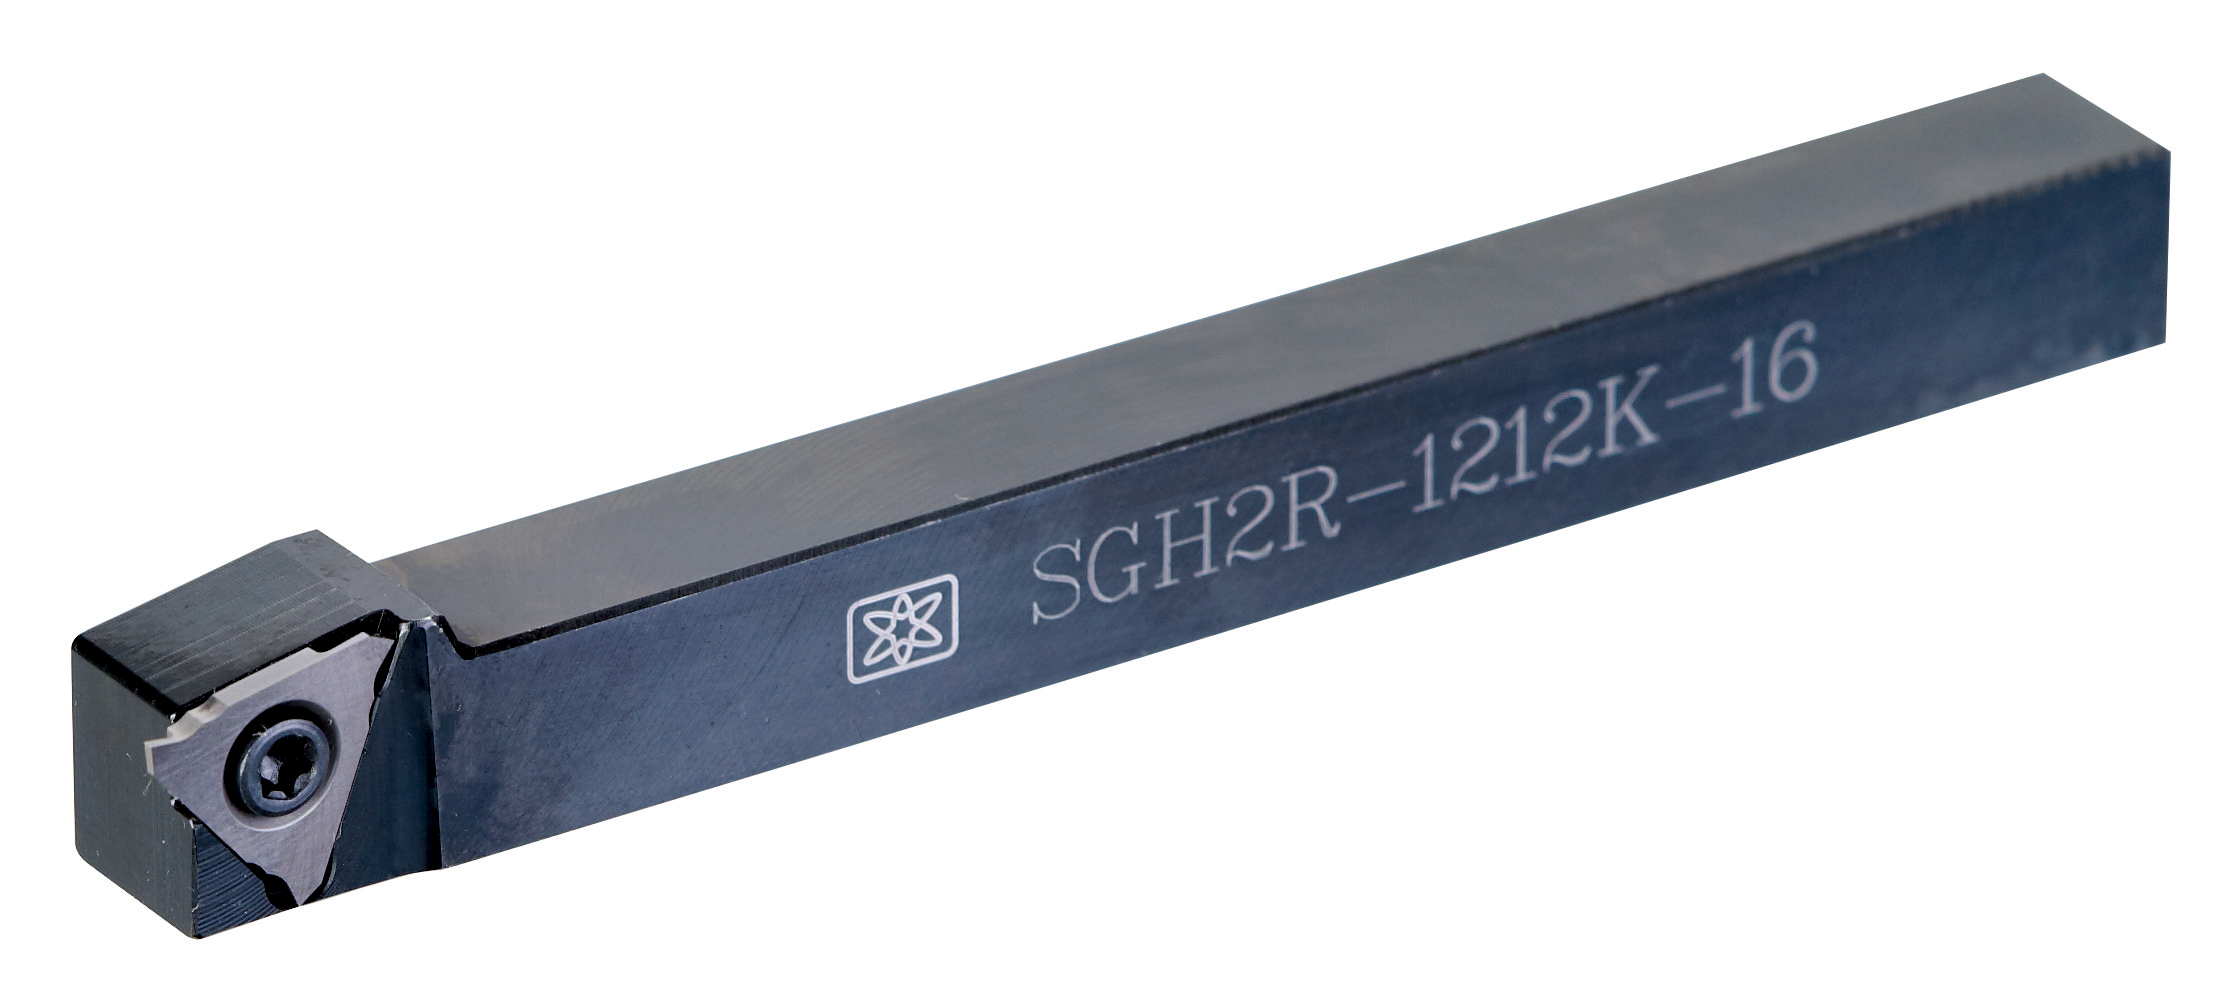 產品|SGH2R (SMG/TTR16...) 外徑切槽刀